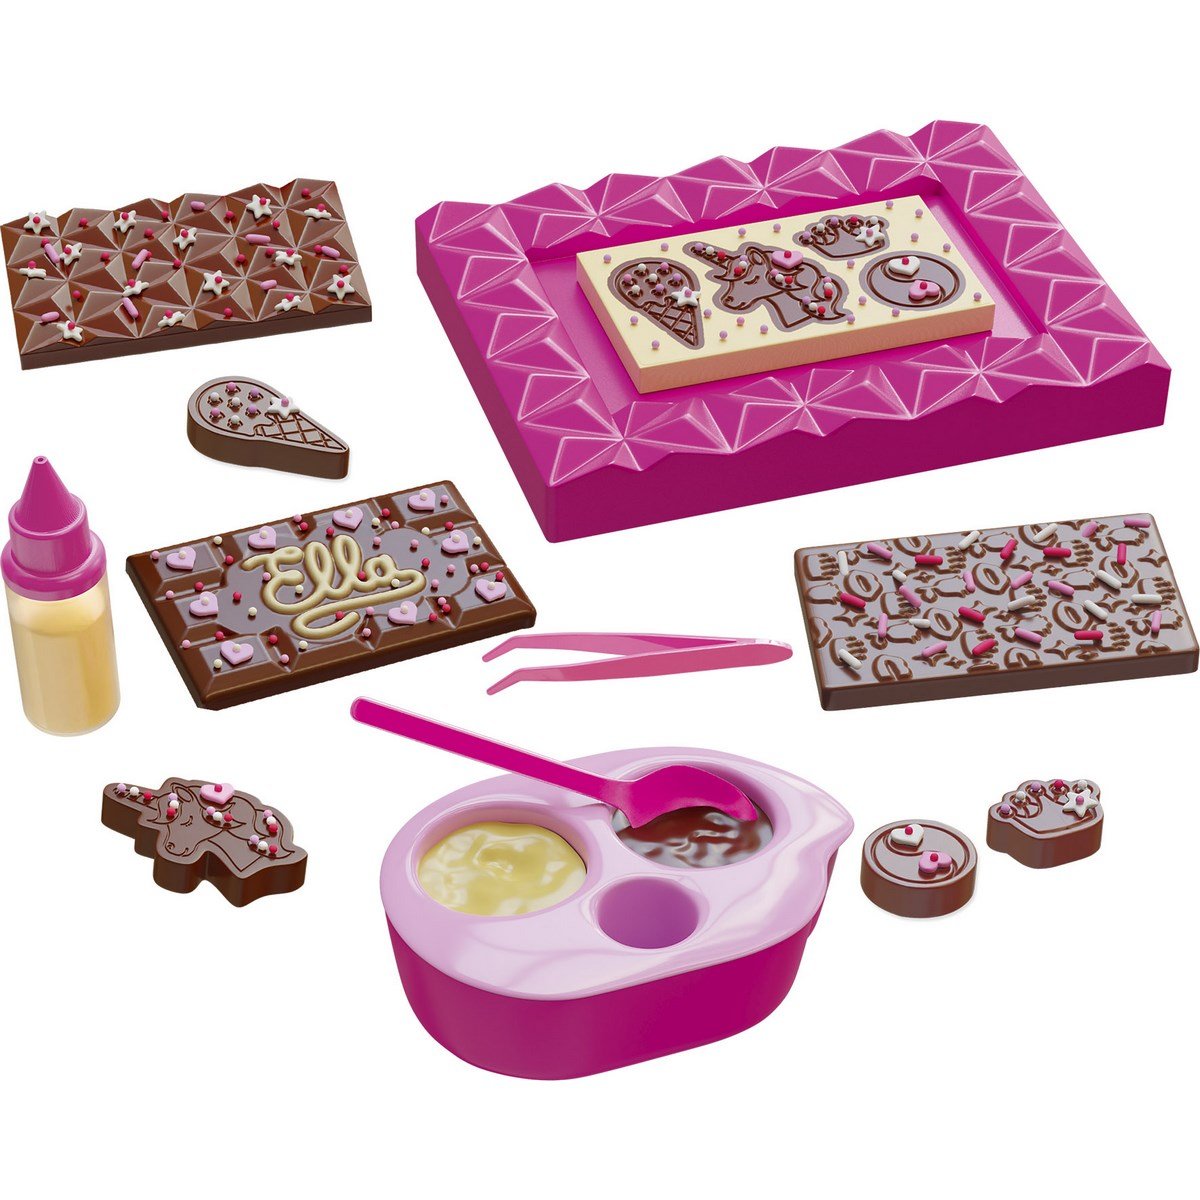 Mini délices - Atelier chocolat 5 en 1